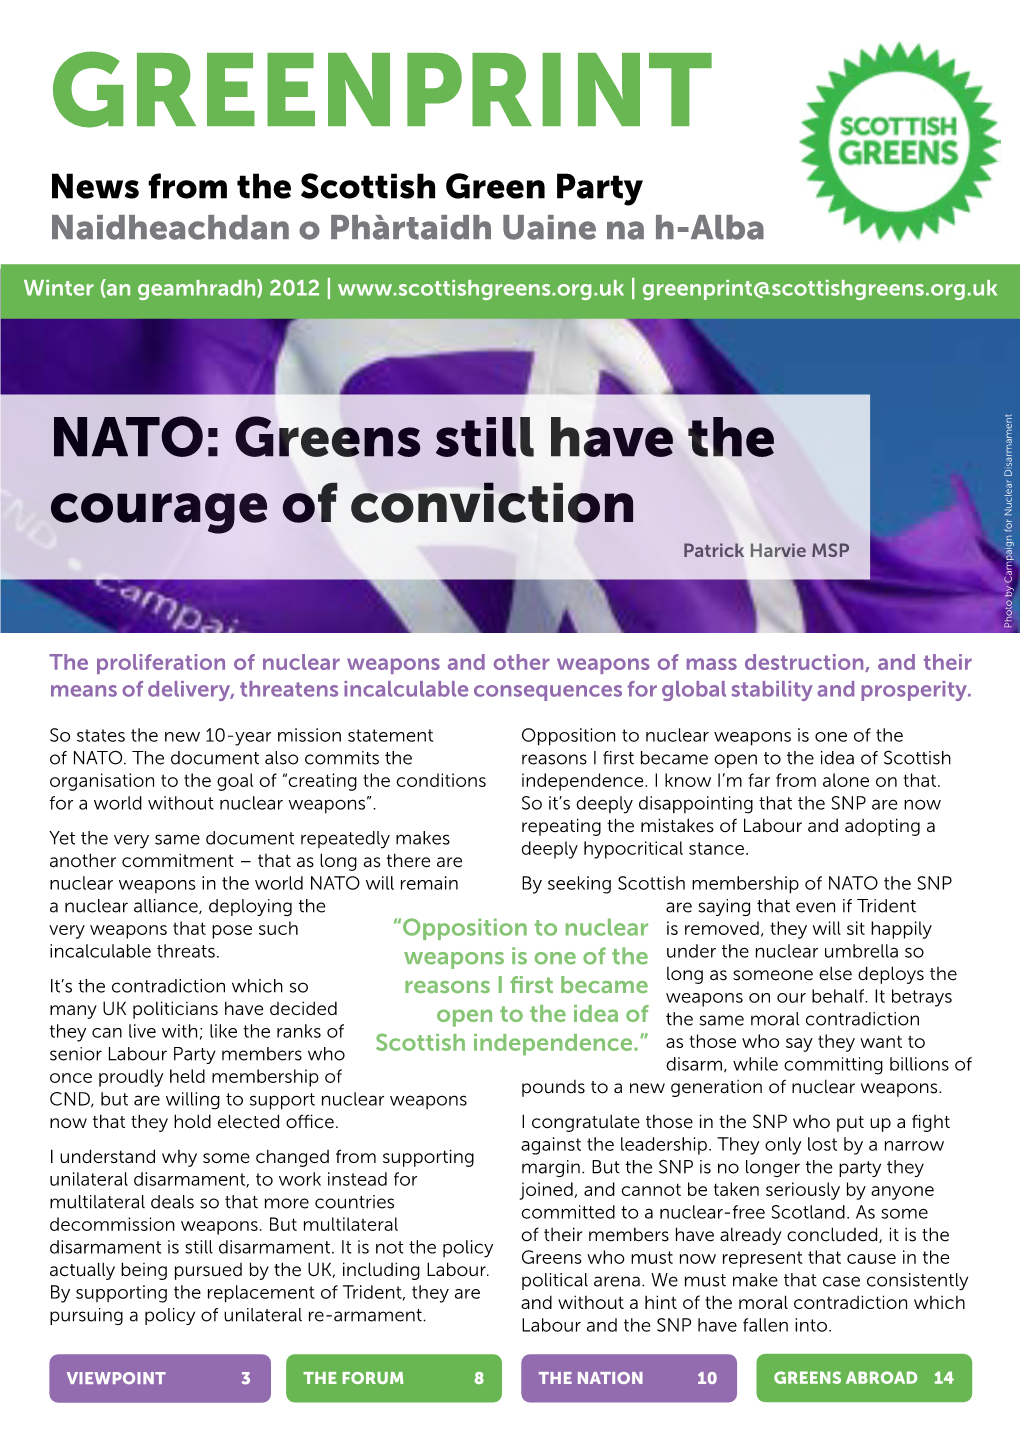 GREENPRINT News from the Scottish Green Party Naidheachdan O Phàrtaidh Uaine Na H-Alba